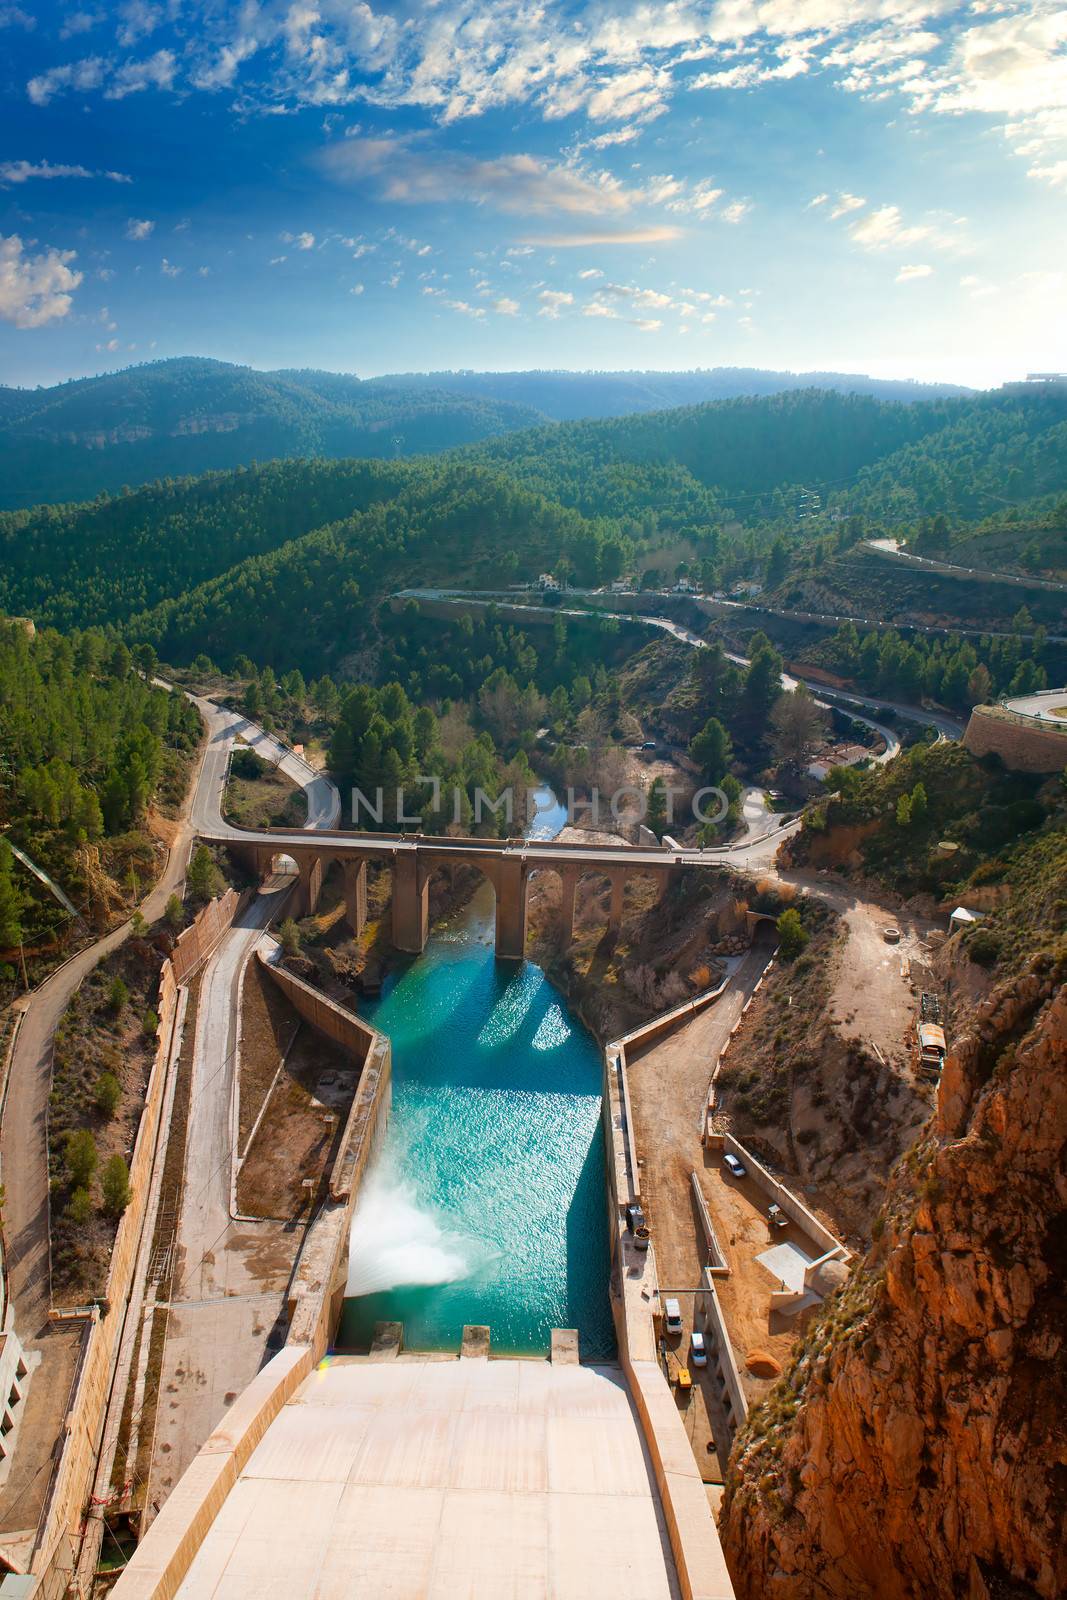 Presa Embalse de Contreras reservoir dam in Cabriel River of Valencia Spain